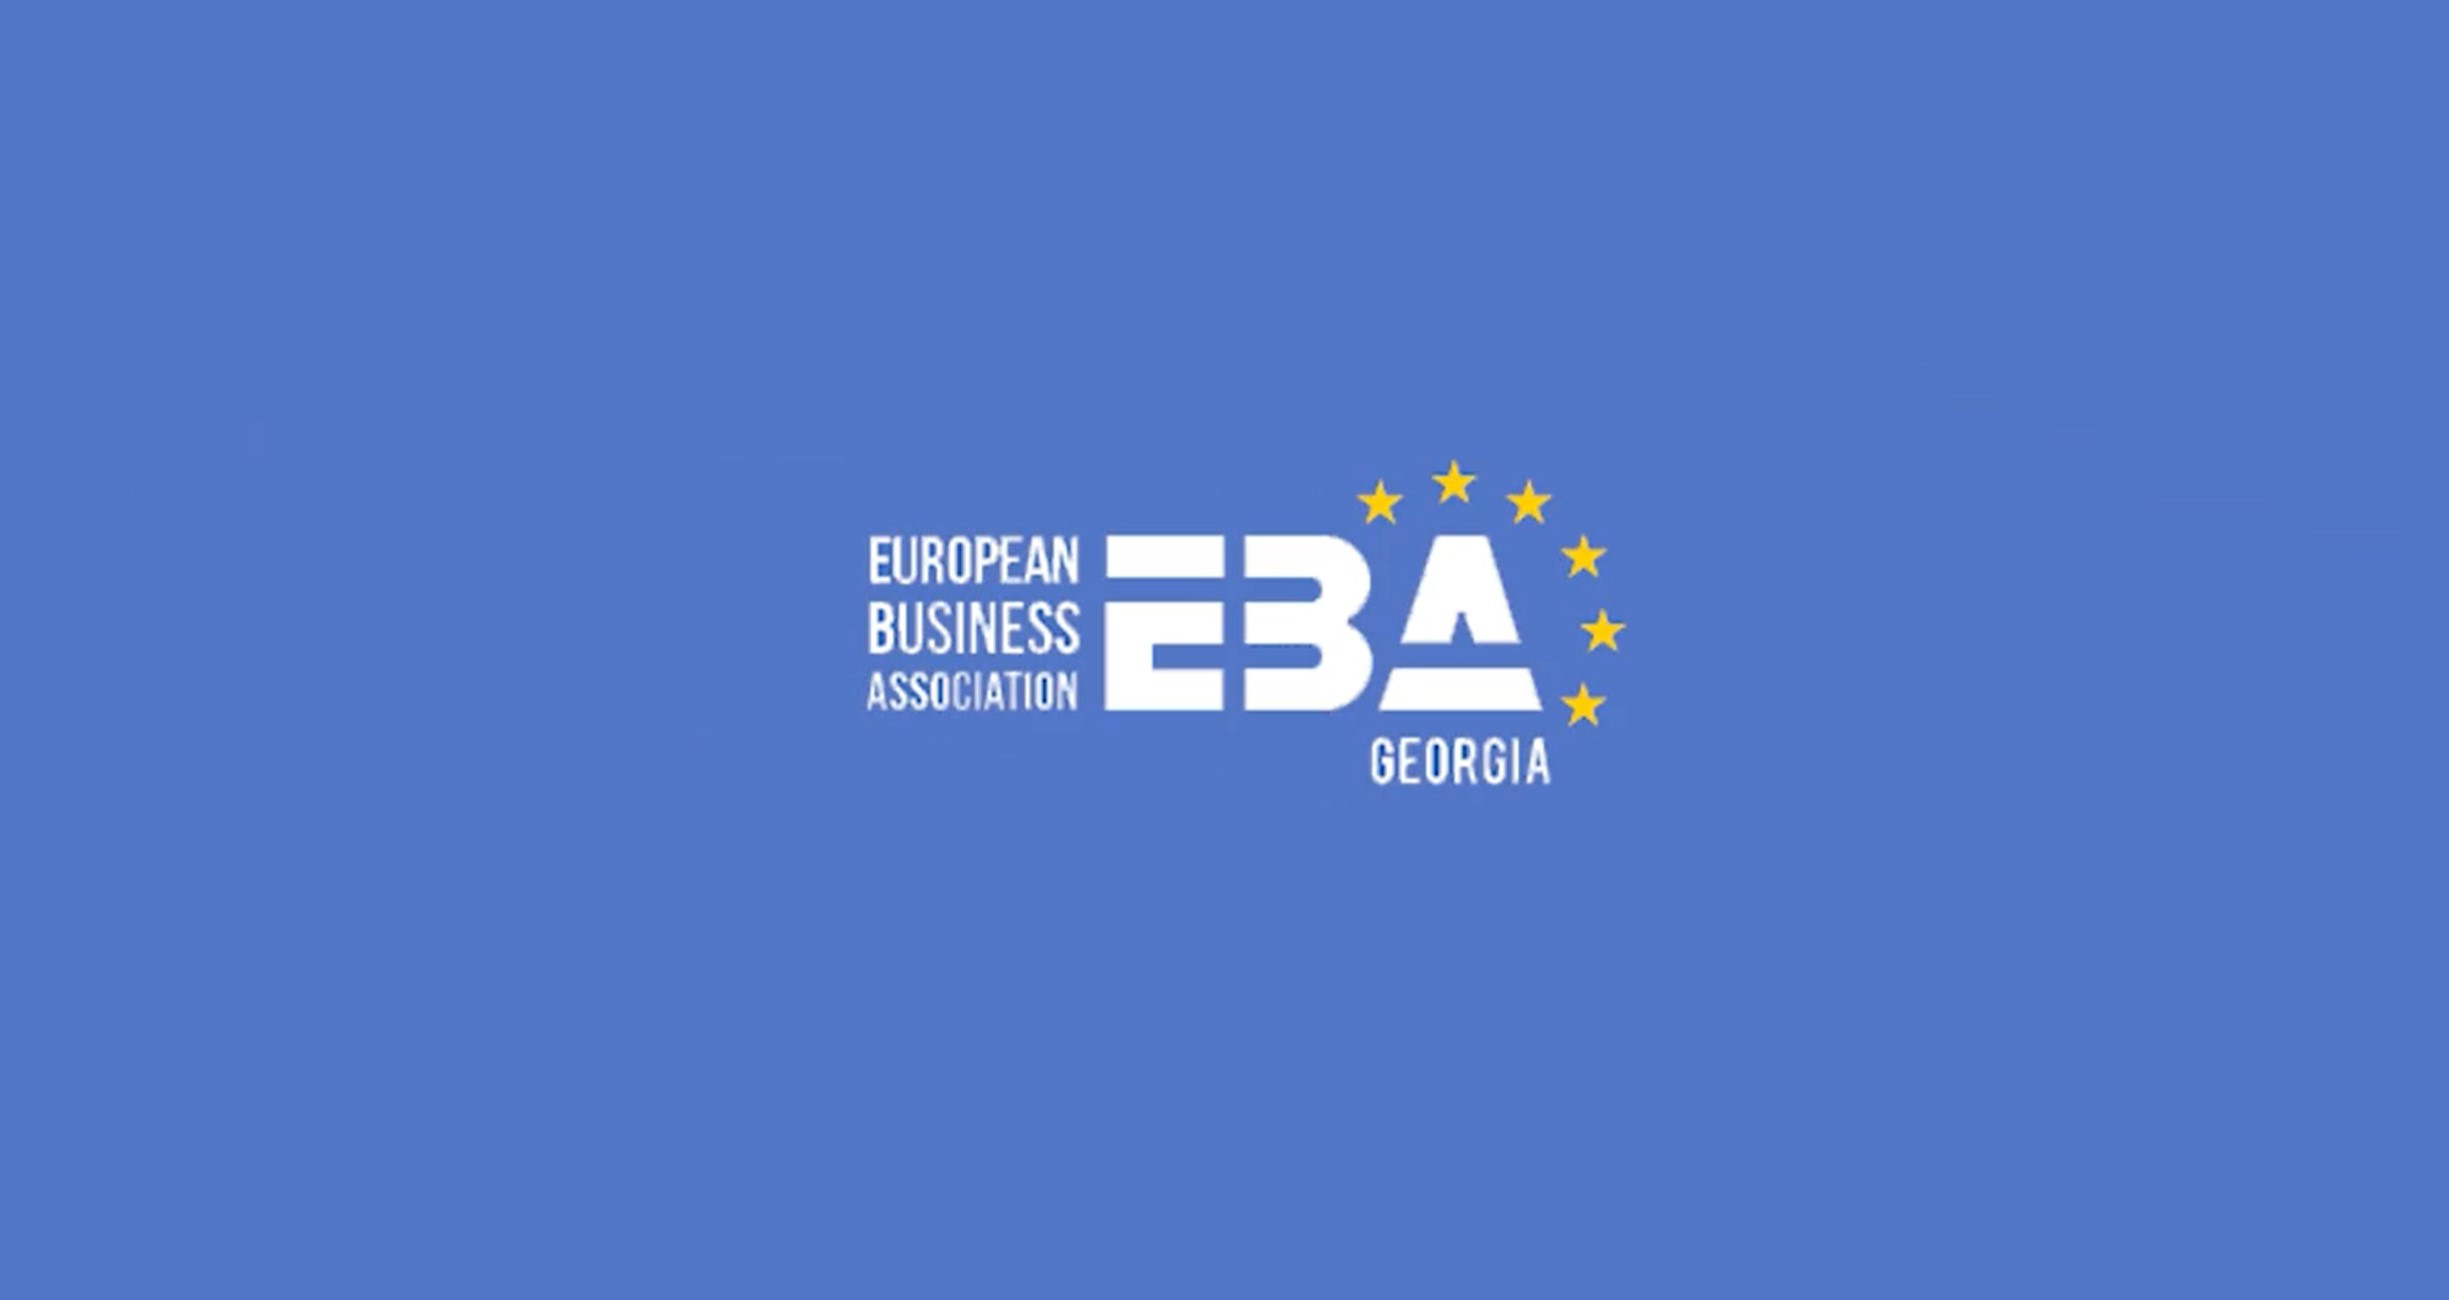 Development opportunities of Greek-Georgian business partnerships in the Georgian market